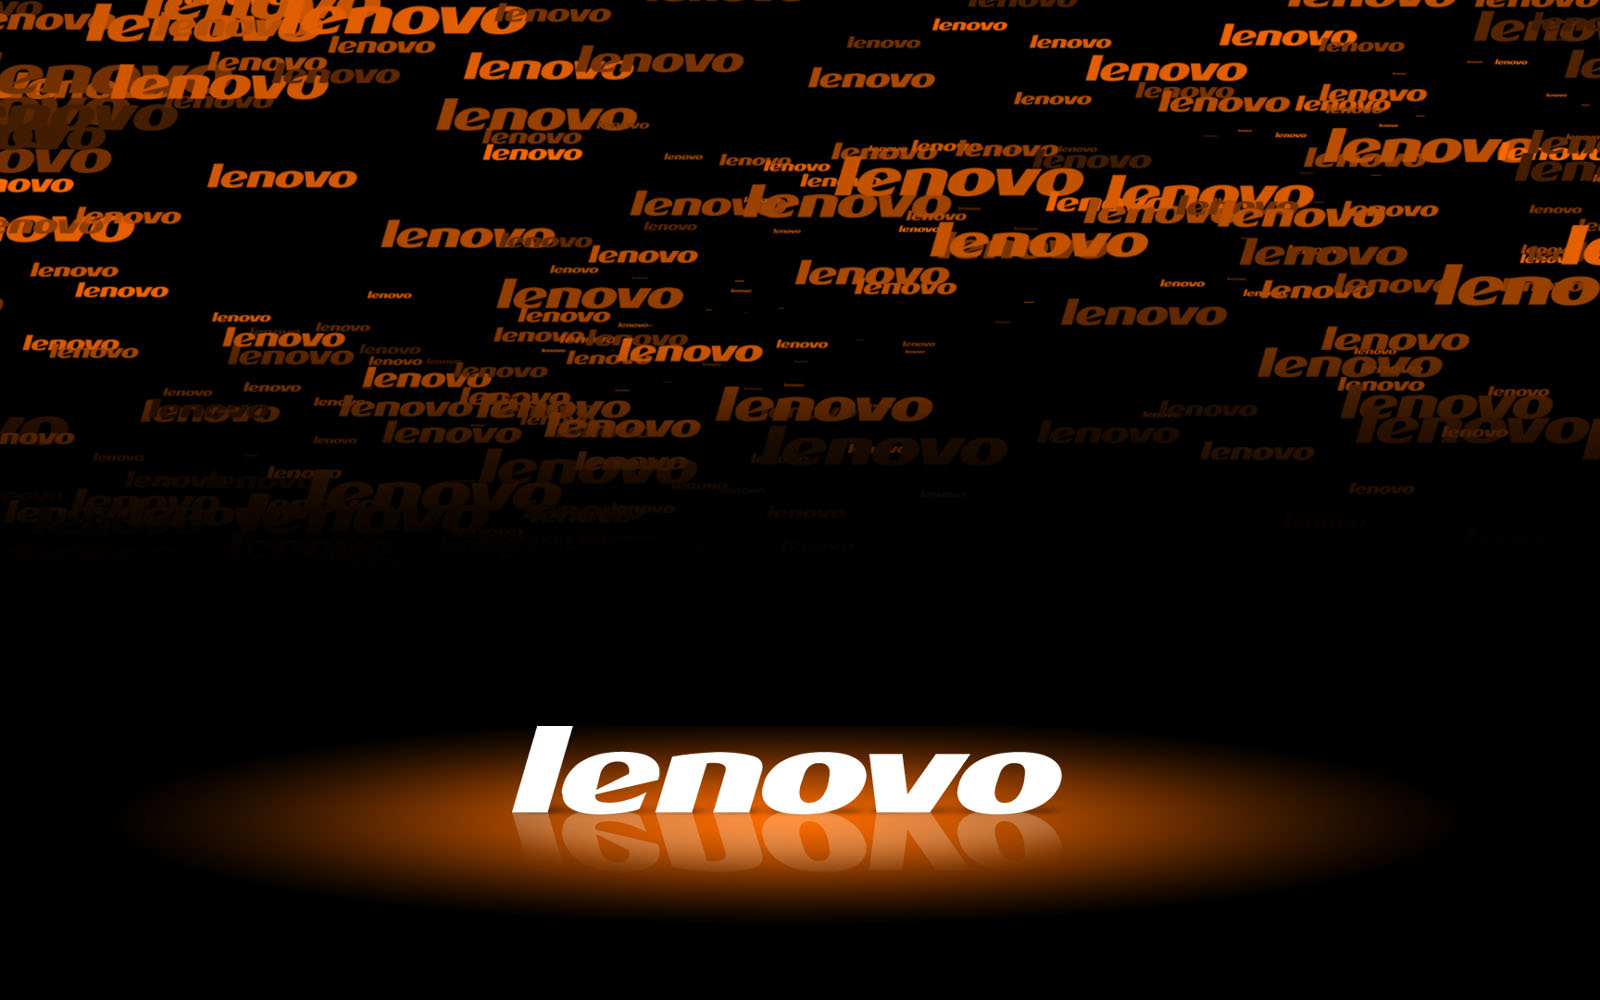 Free Download Wallpapers Lenovo Laptop Desktop Wallpapers Lenovo Laptop Desktop 1600x1000 For Your Desktop Mobile Tablet Explore 47 Lenovo Desktop Wallpaper Downloads Lenovo Wallpaper For My Desktop